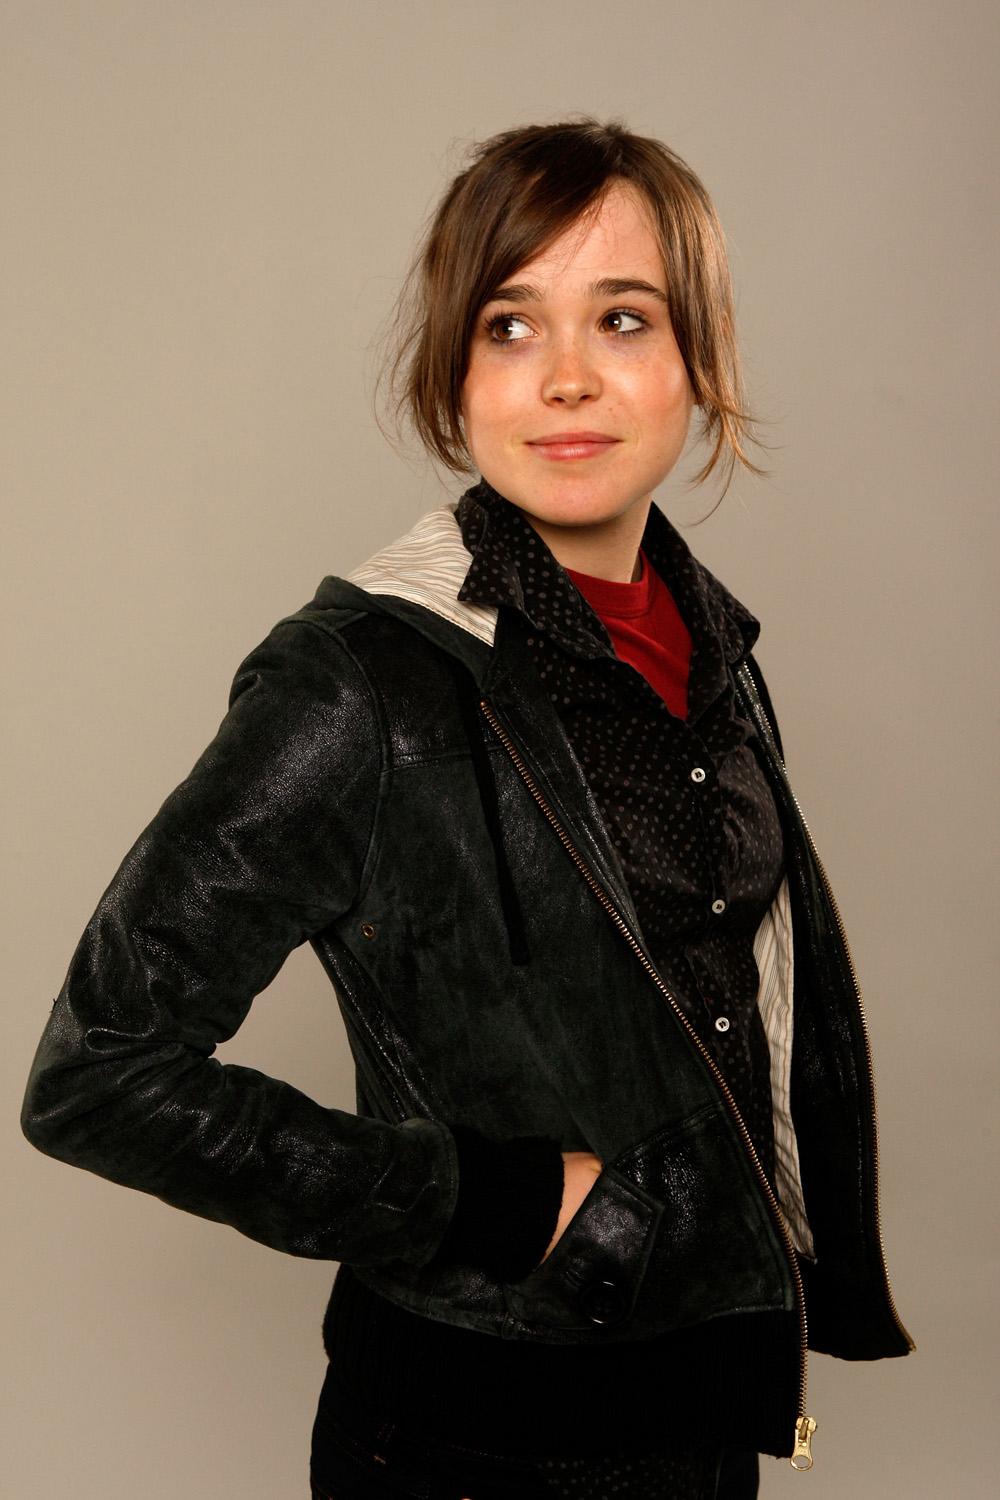 Photo №11591 Ellen Page.